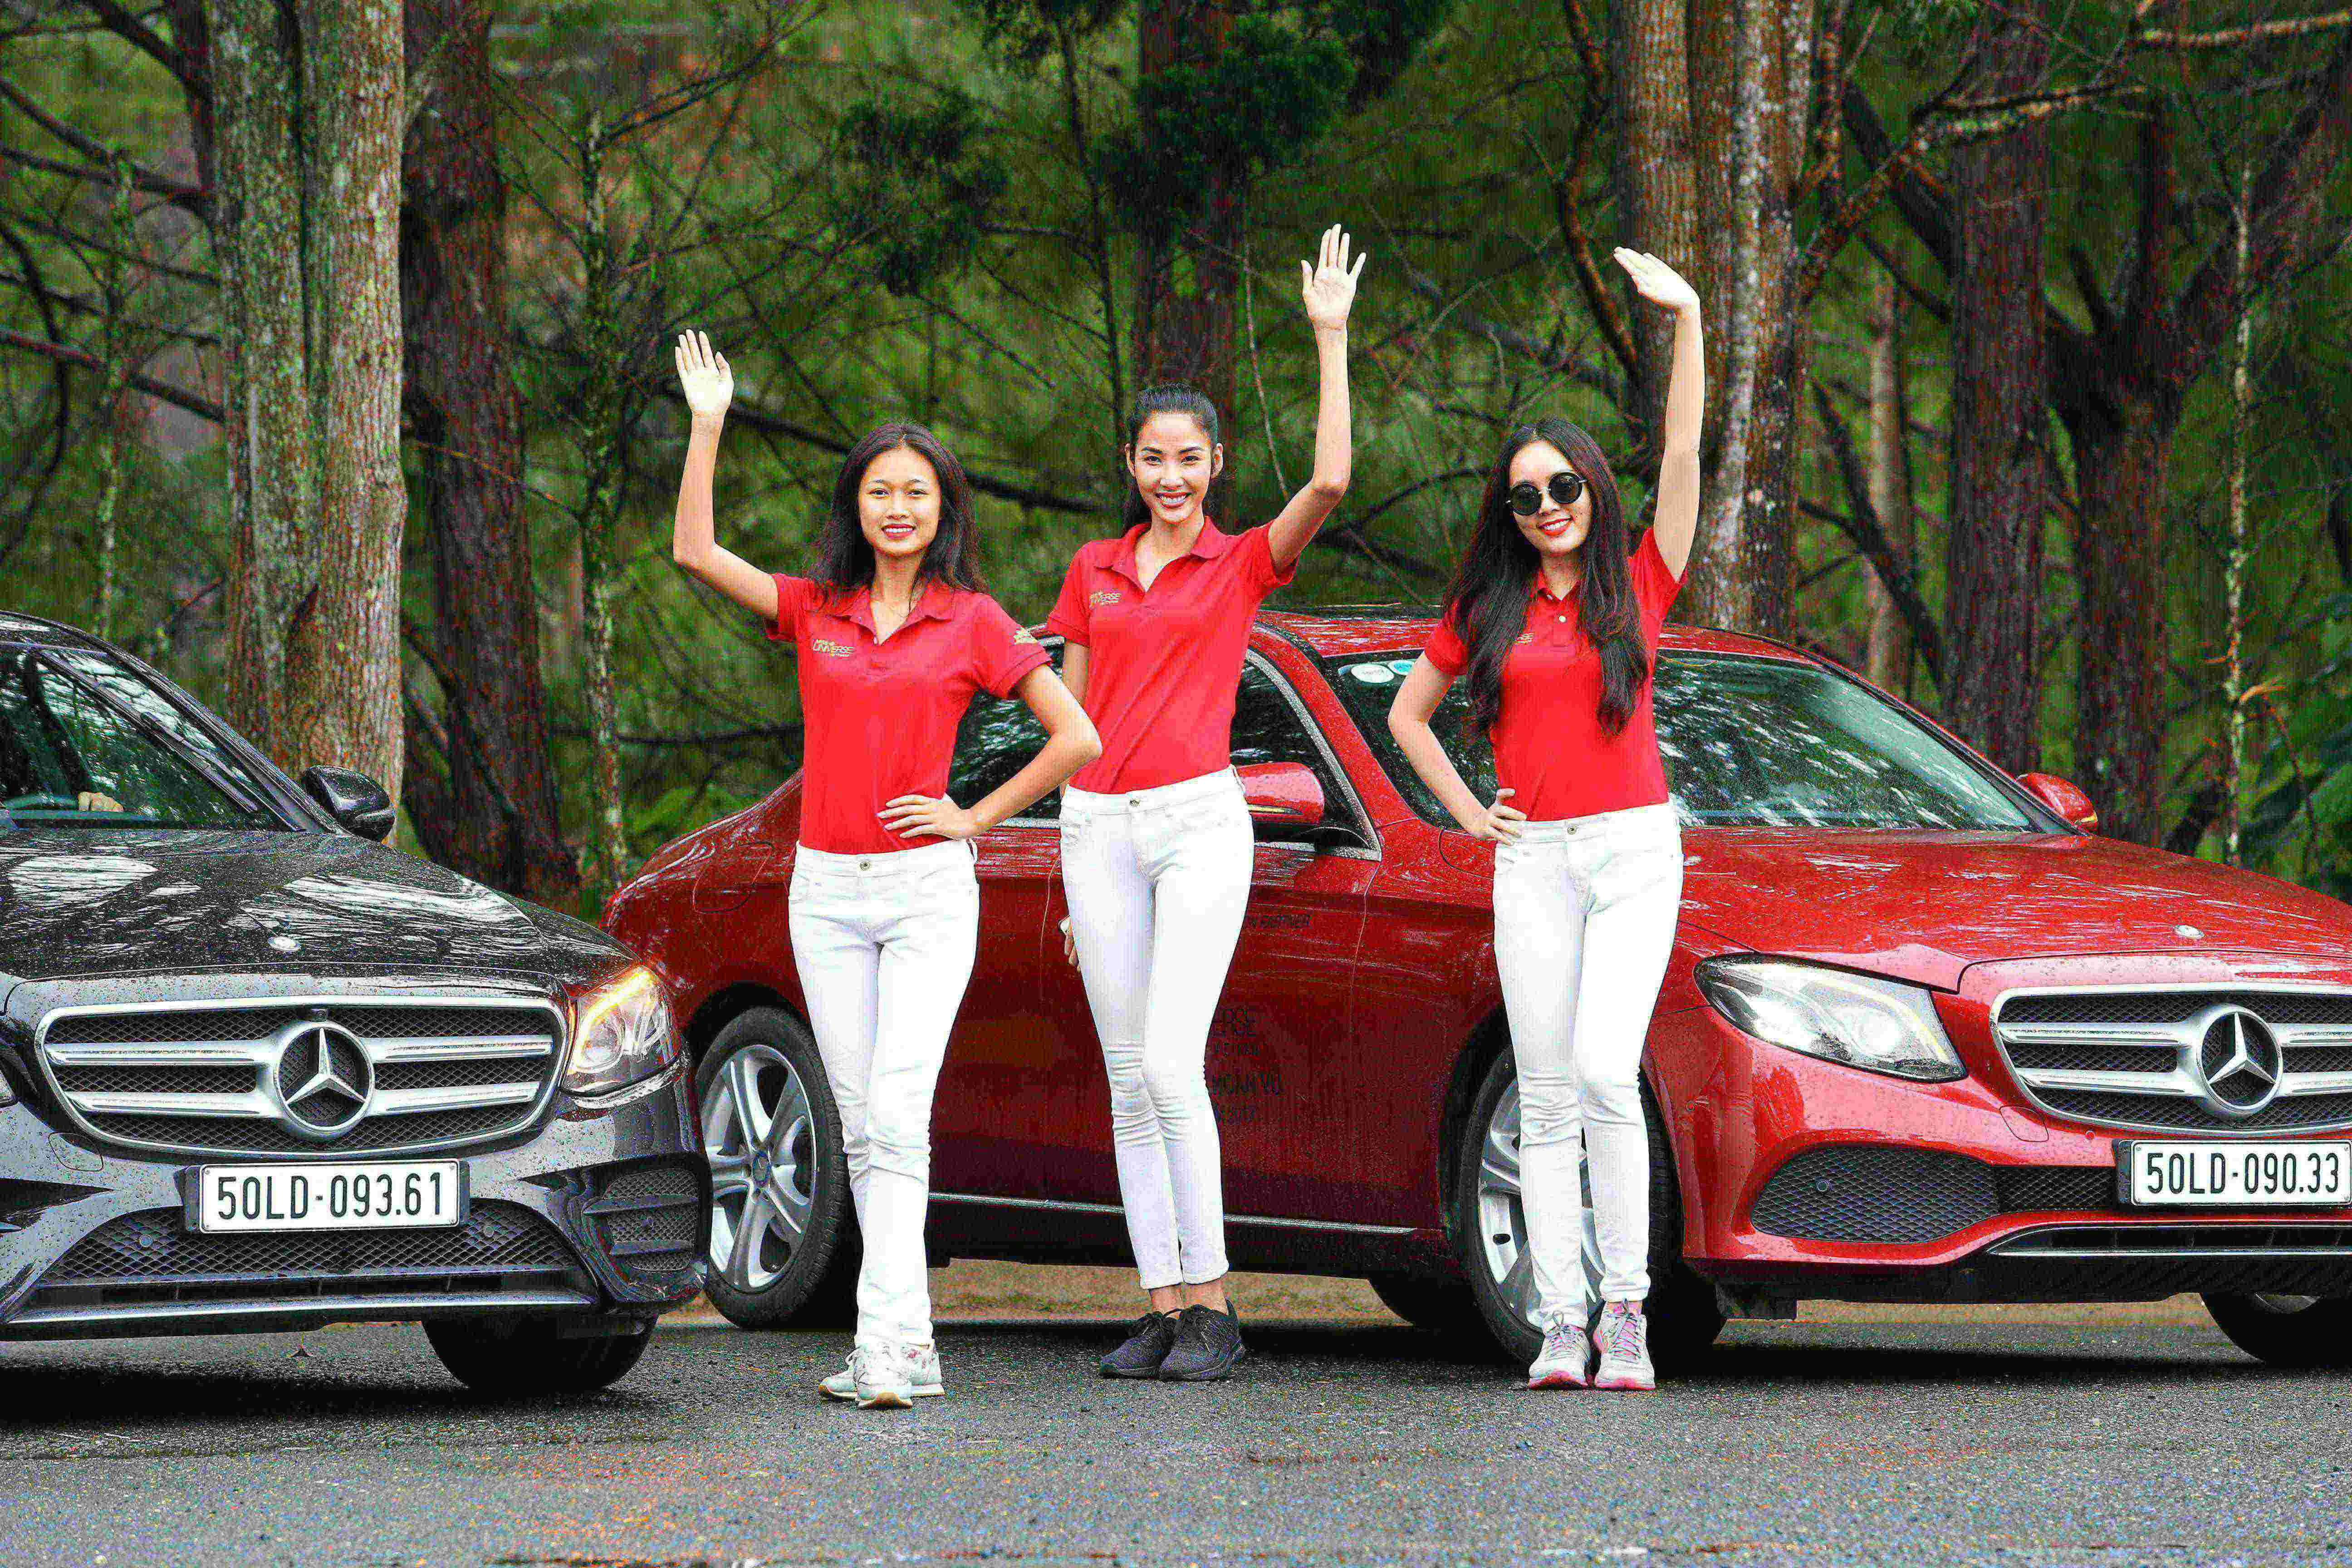 Mercedes đồng hành cùng Hoa hậu Hoàn vũ Việt Nam trên những chuyến đi